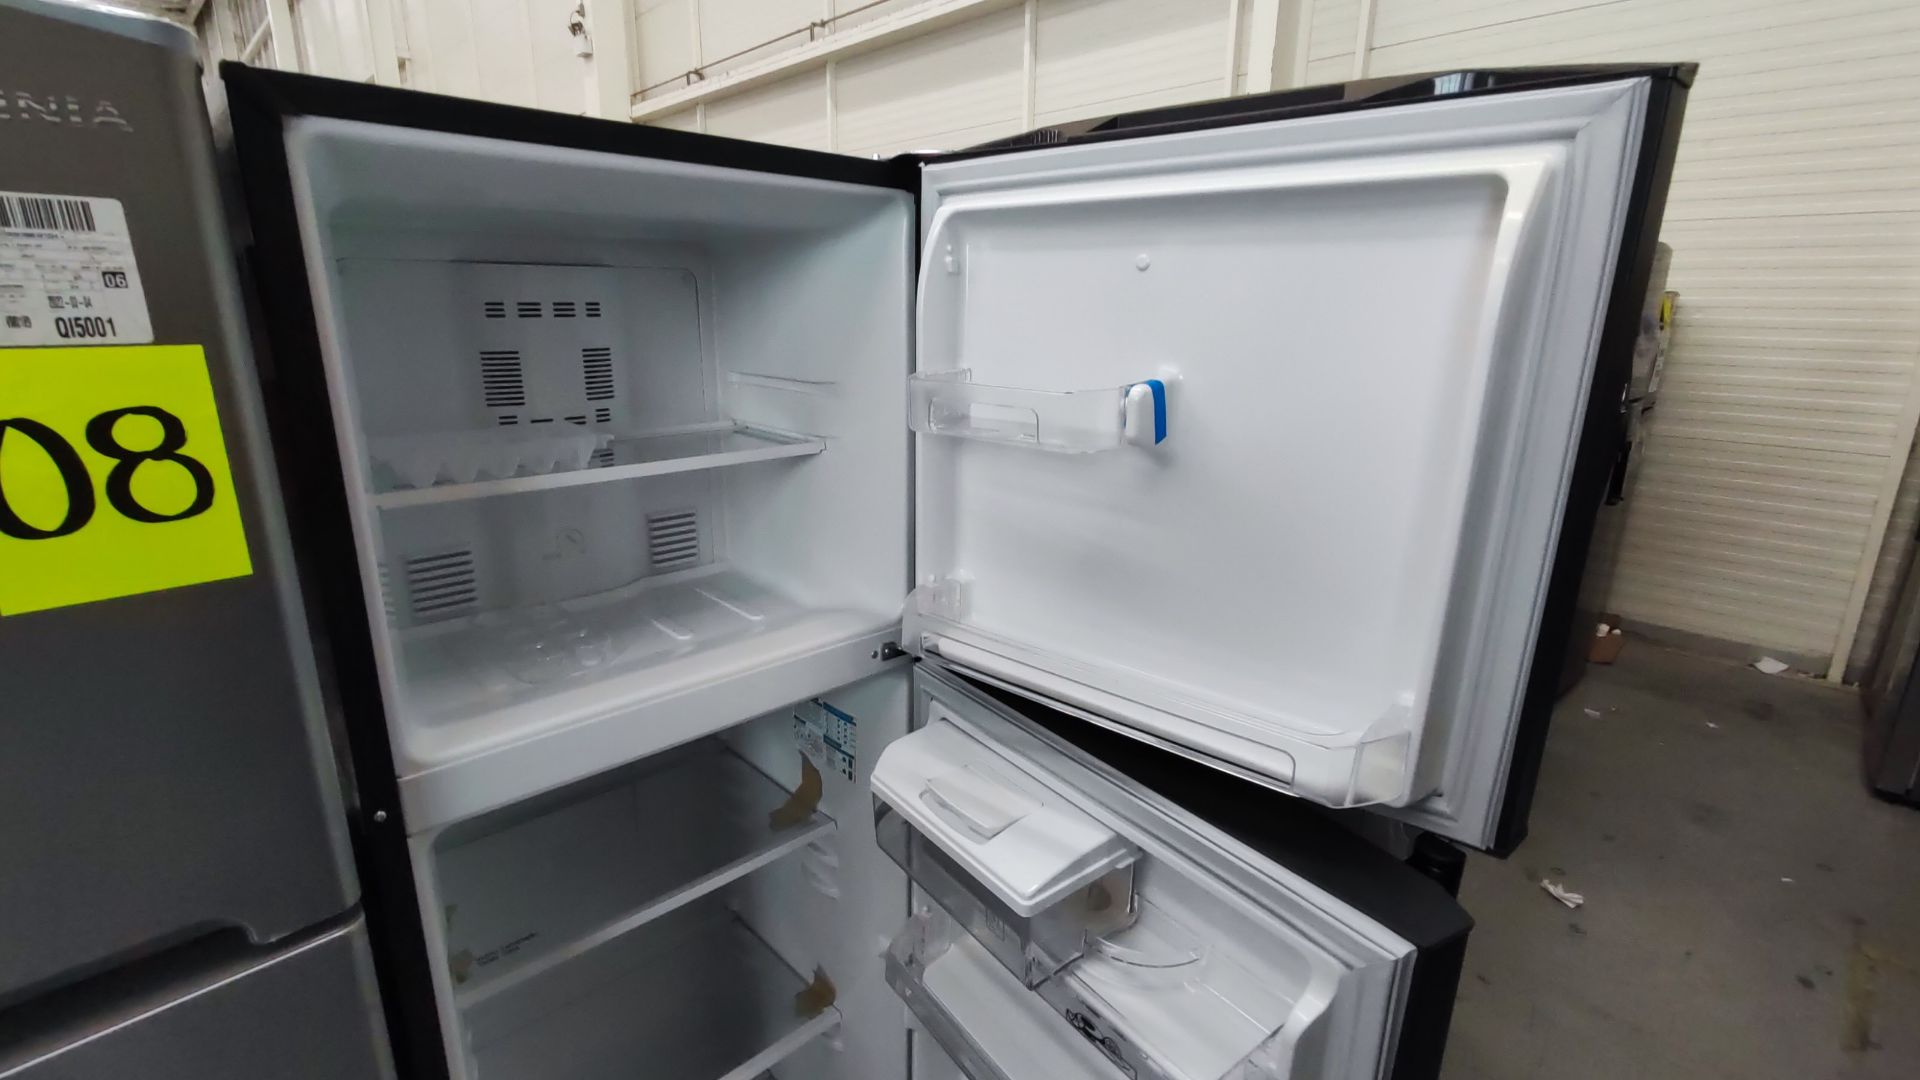 Lote Conformado por 2 Refrigeradores, Contiene; 1 Refrigerador con Dispensador de Agua Marca Mabe, - Image 8 of 15